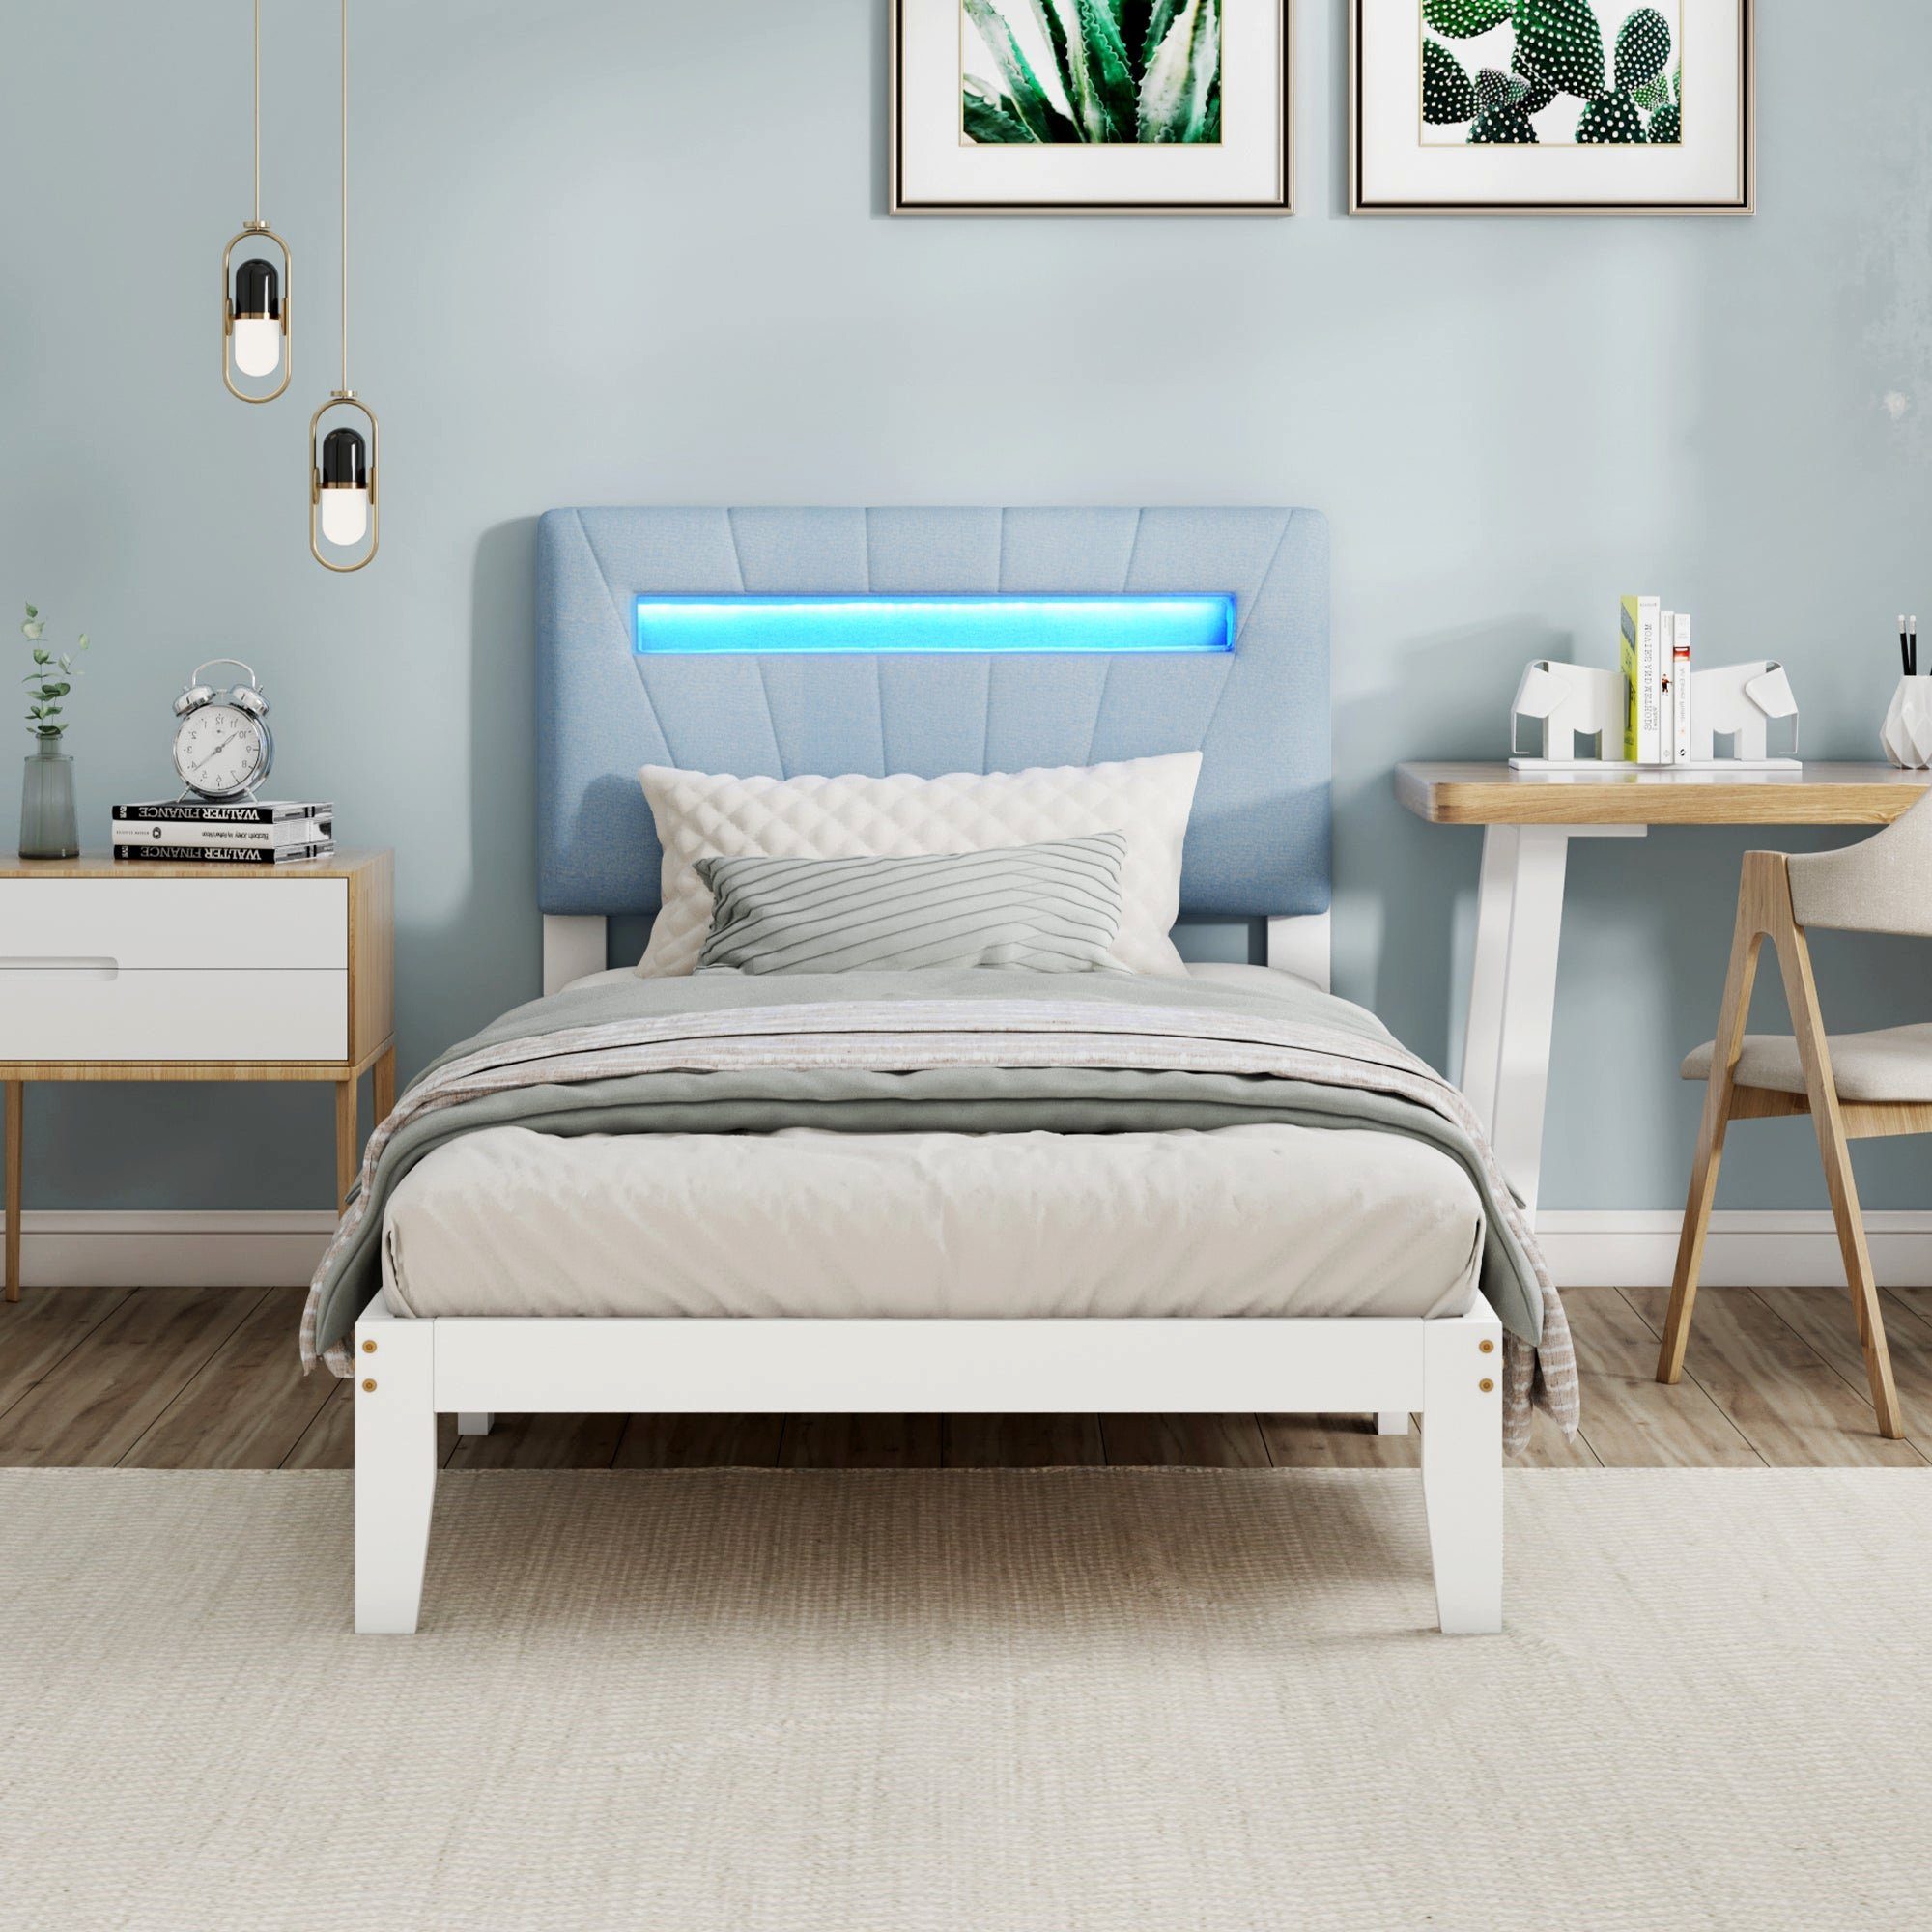 BUMHUM Bett Holzbett Einzelbett Polster Kopfteil mit LED-Lichtleiste in (7  Farben Jugendbett Erwachsenenbett Rahmen aus Kiefer), Weiß (90x200cm)